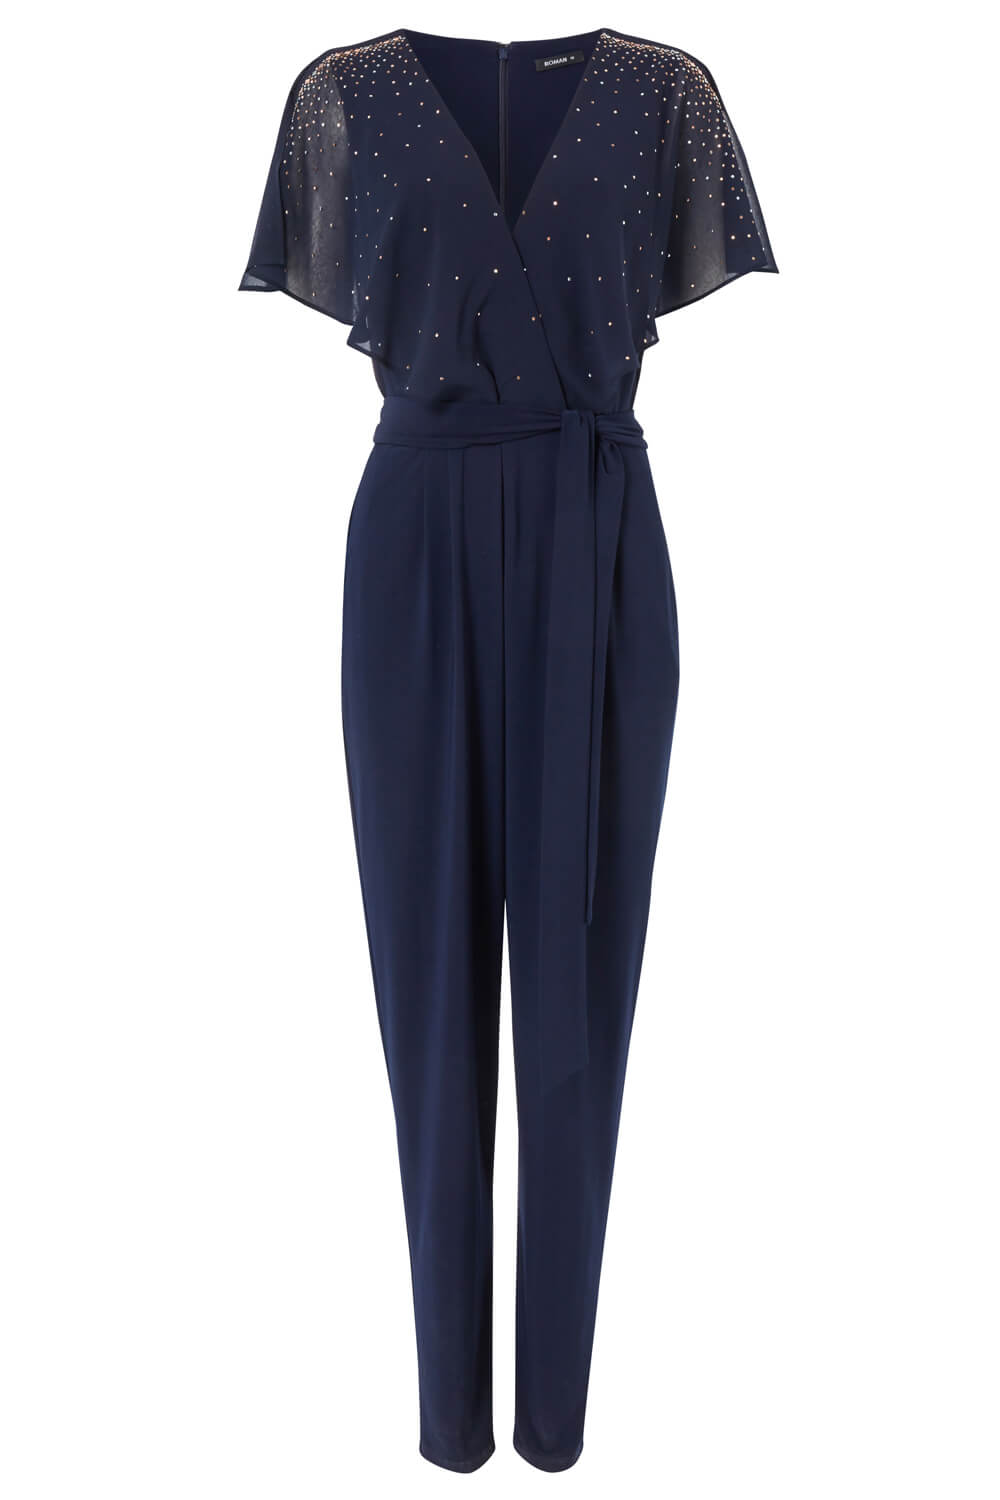 Midnight Blue Sparkle Embellished Belted Jumpsuit, Image 4 of 4